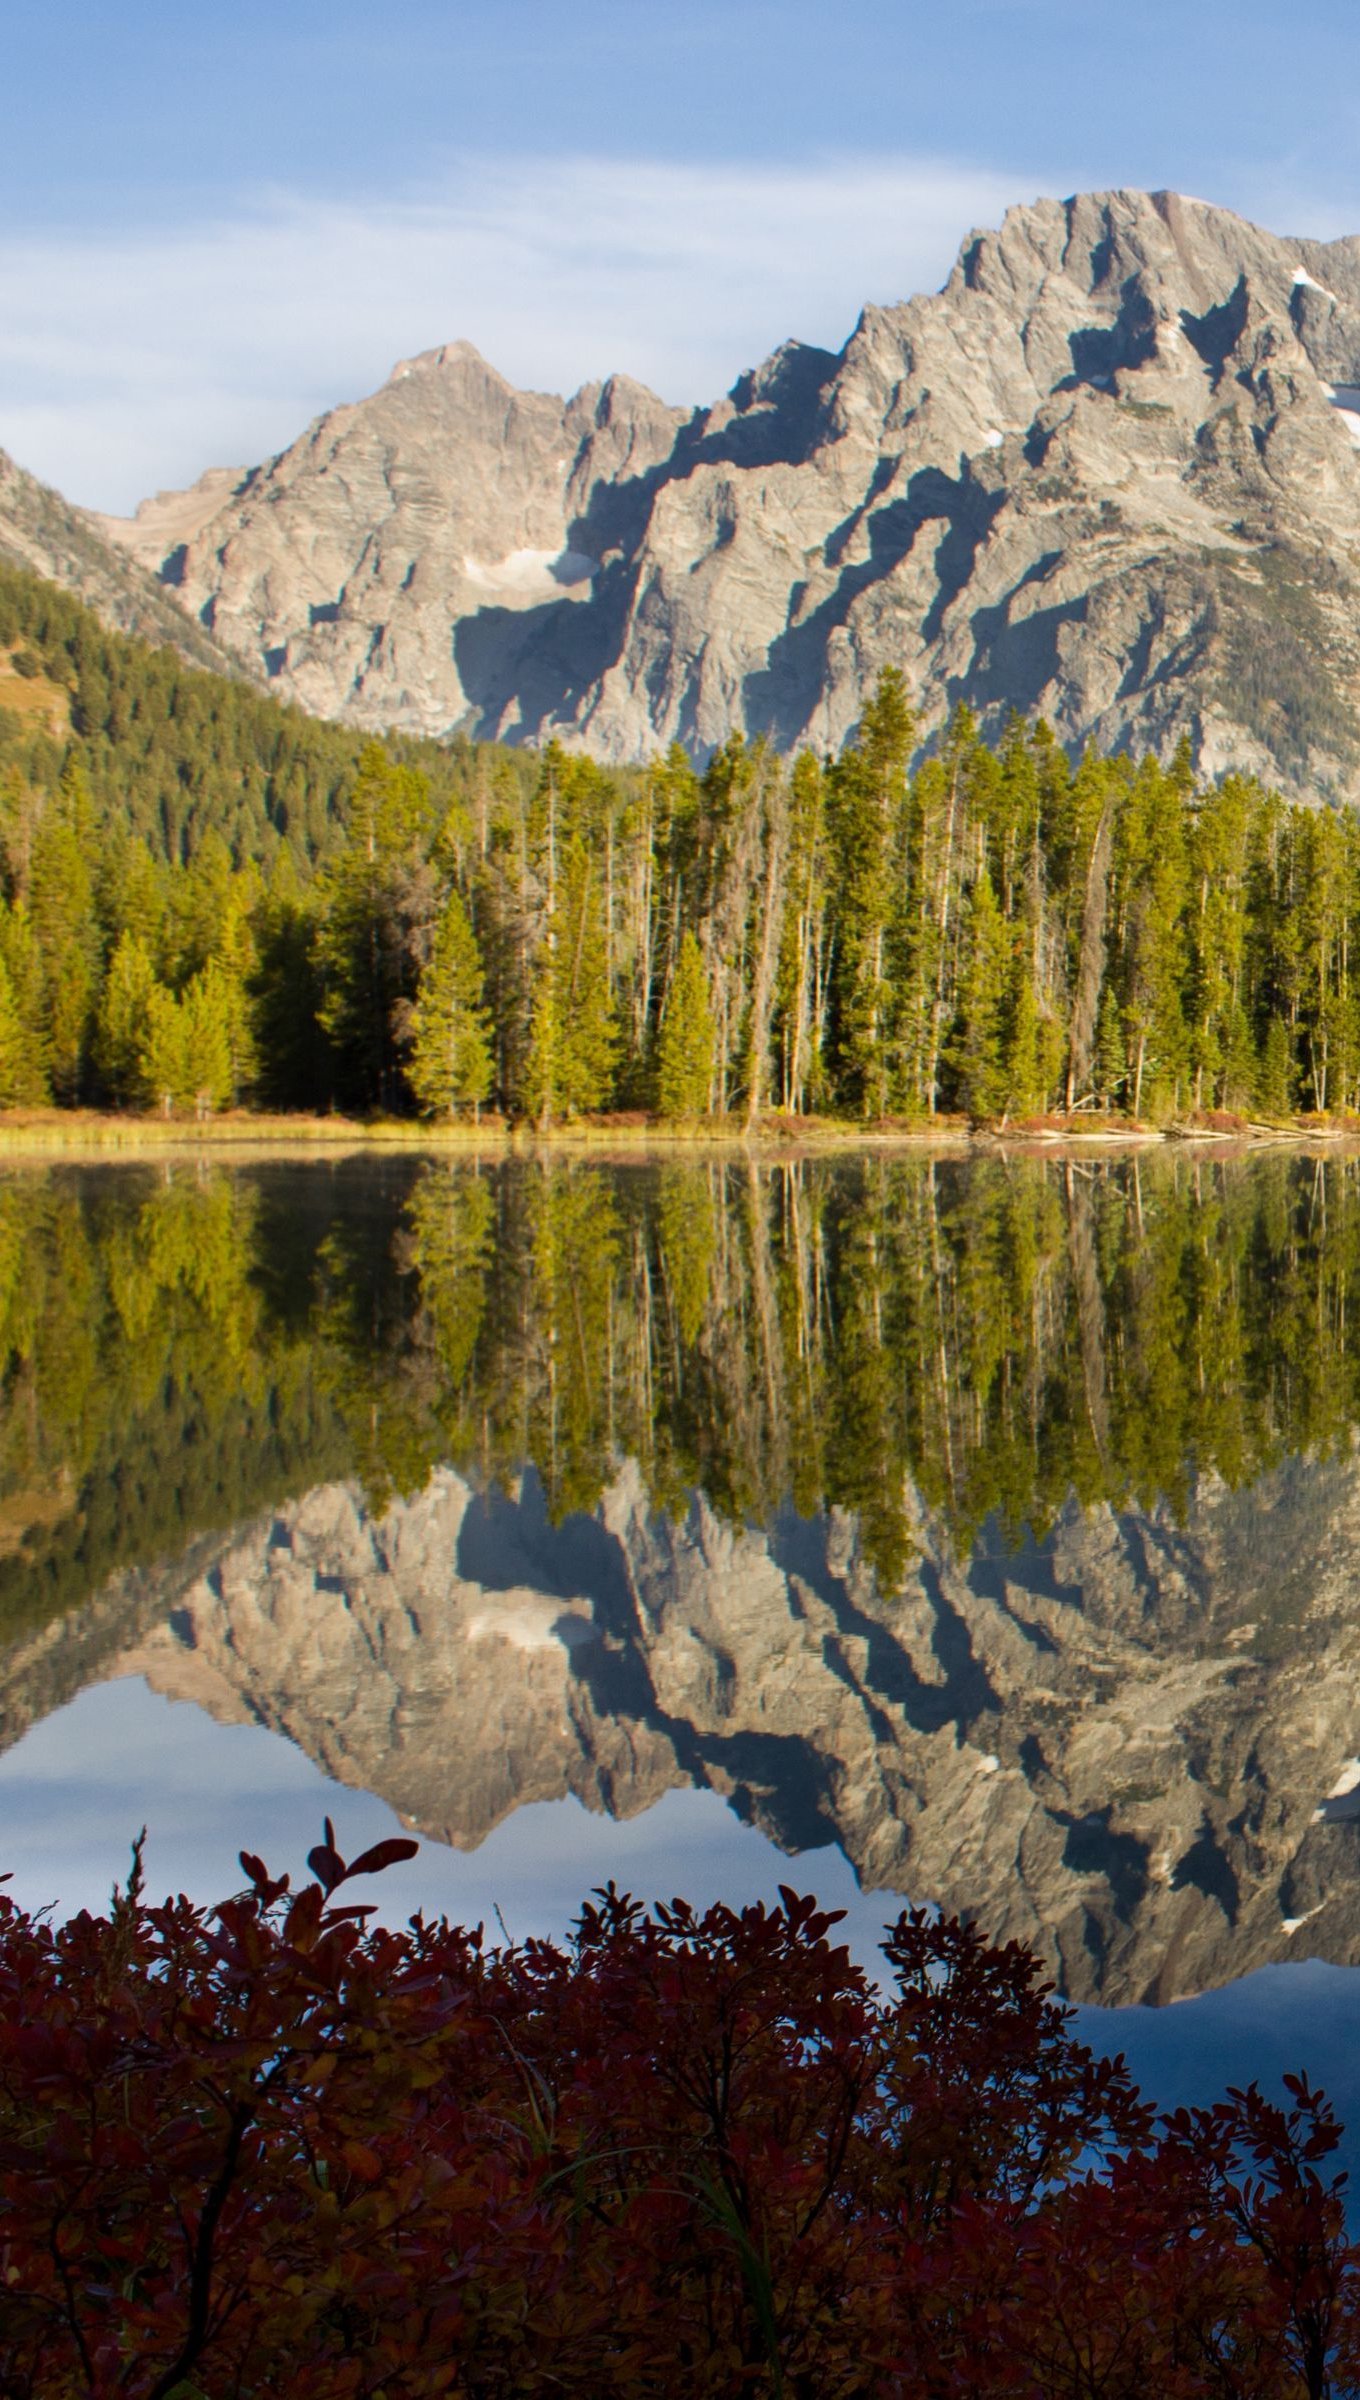 Fondos de pantalla Montaña reflejada en lago en el bosque Vertical